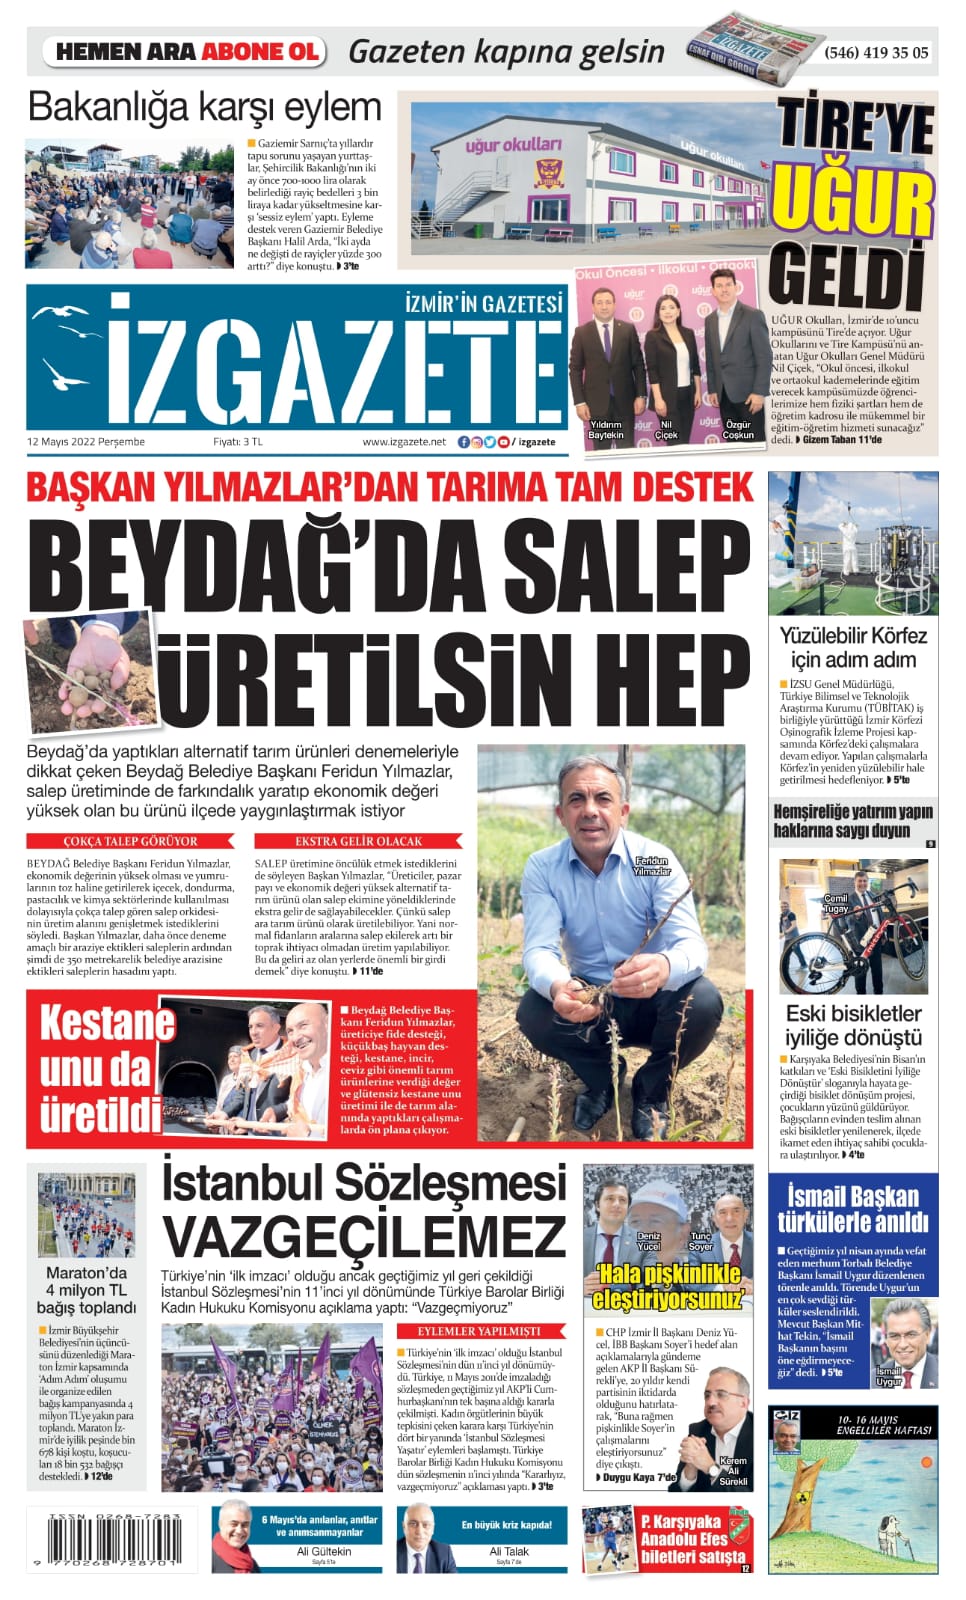 İz Gazete - İzmir'in Gazetesi - 12.05.2022 Manşeti